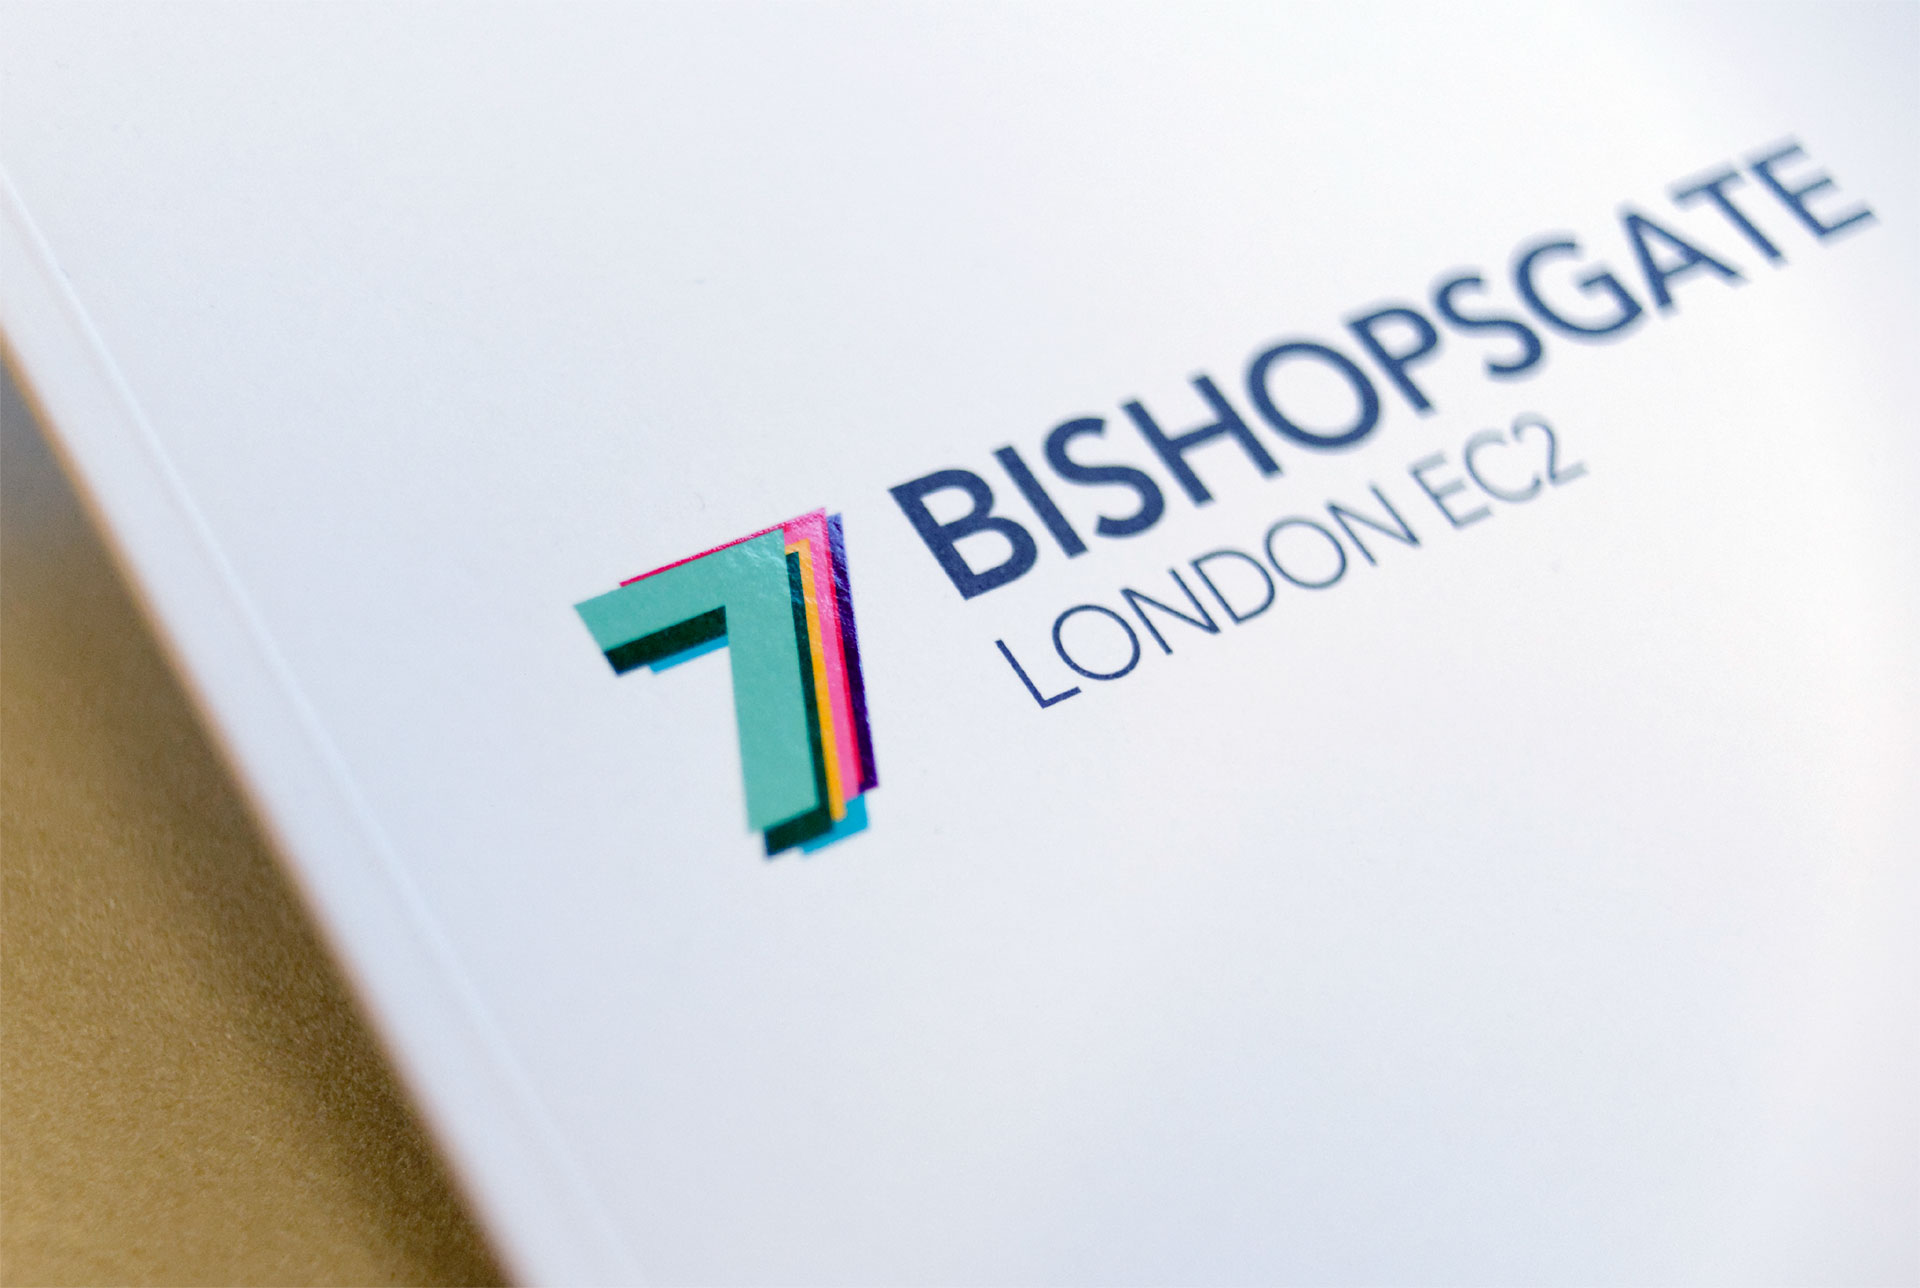 7-bishopsgate-brochure-front-cover.jpg